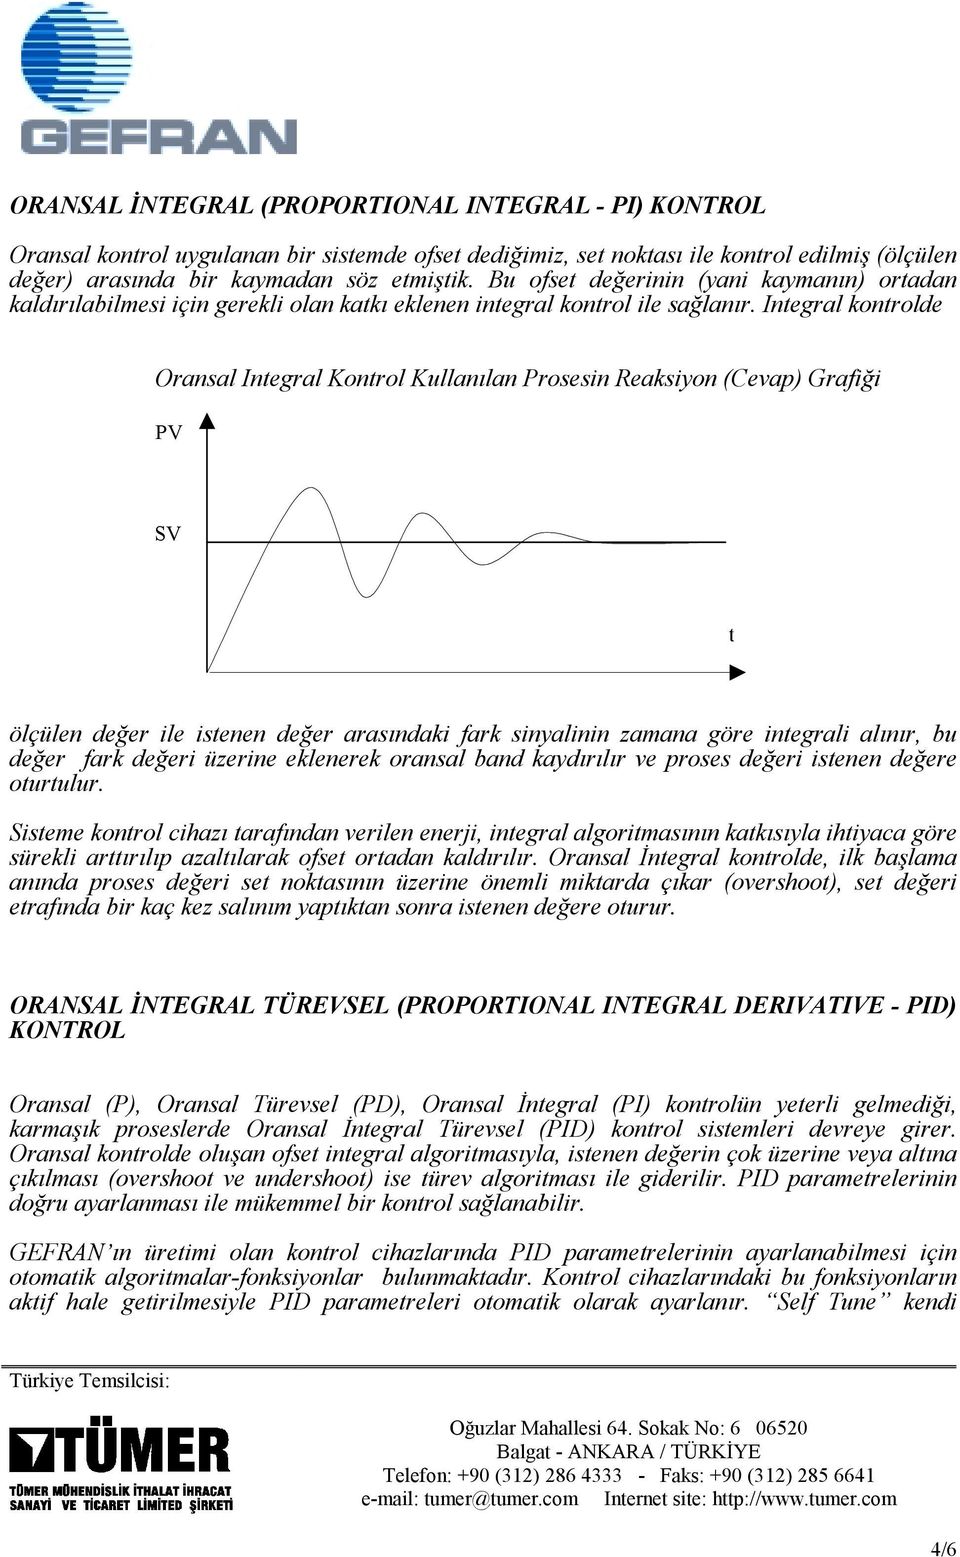 Inegral konrolde Oransal Inegral Konrol Kullanılan Prosesin Reaksiyon (Cevap) Grafiği ölçülen değer ile isenen değer arasındaki fark sinyalinin zamana göre inegrali alınır, bu değer fark değeri